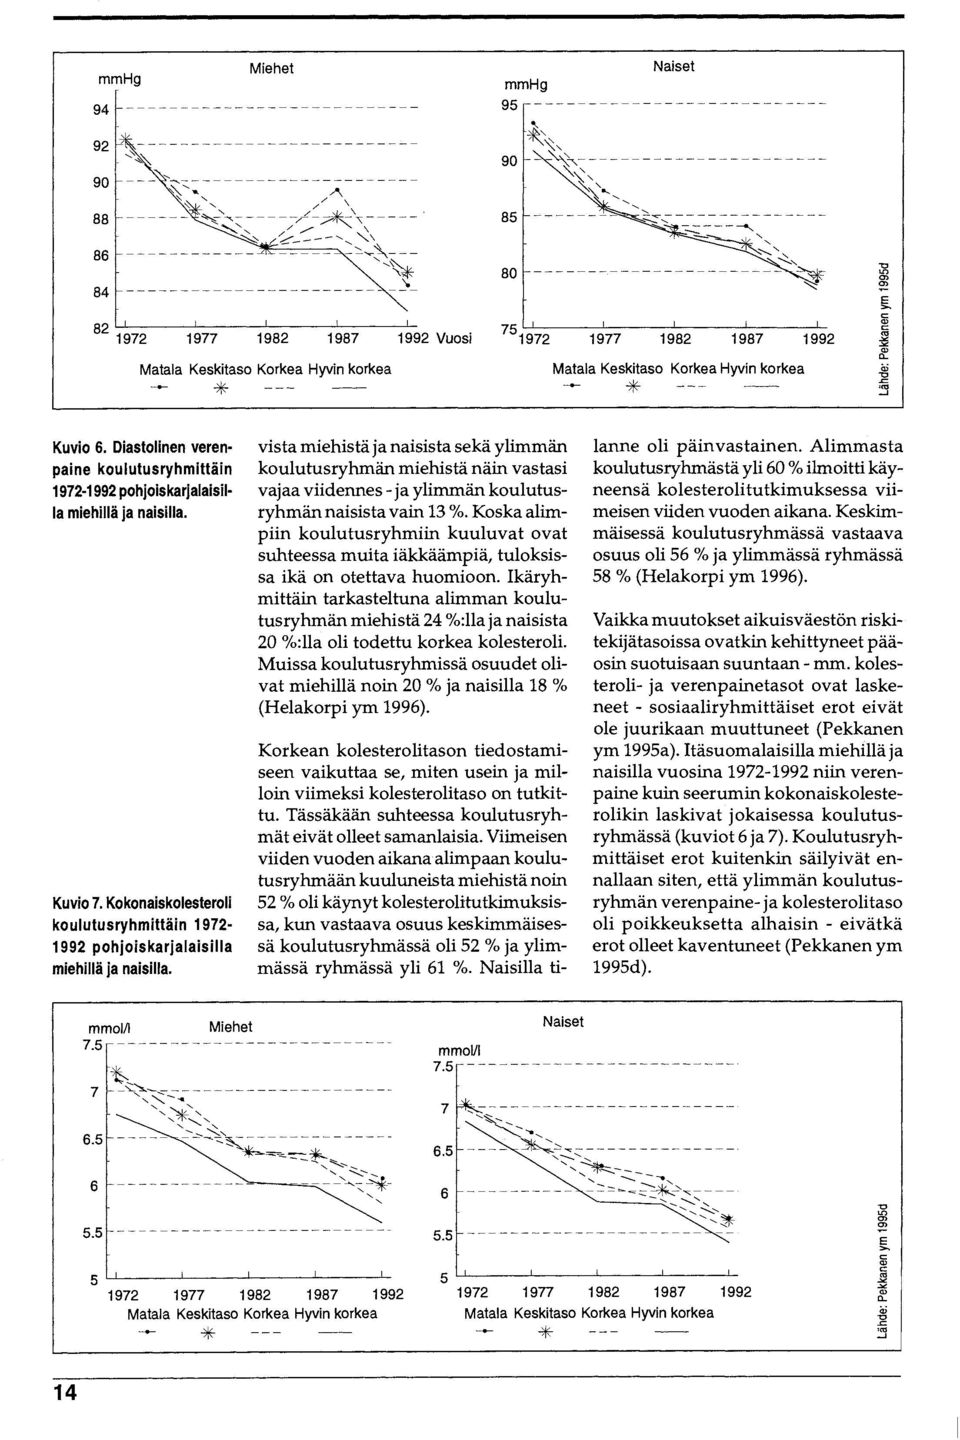 Diastolinen verenpaine koulutusryhmittain 1972-1 992 pohjoiskarjalaisilla miehilla ja naisilla. Kuvio 7. Kokonaiskolesteroli koulutusryhmittain 1972-1992 pohjoiskarjalaisilla miehilla ja naisilla.